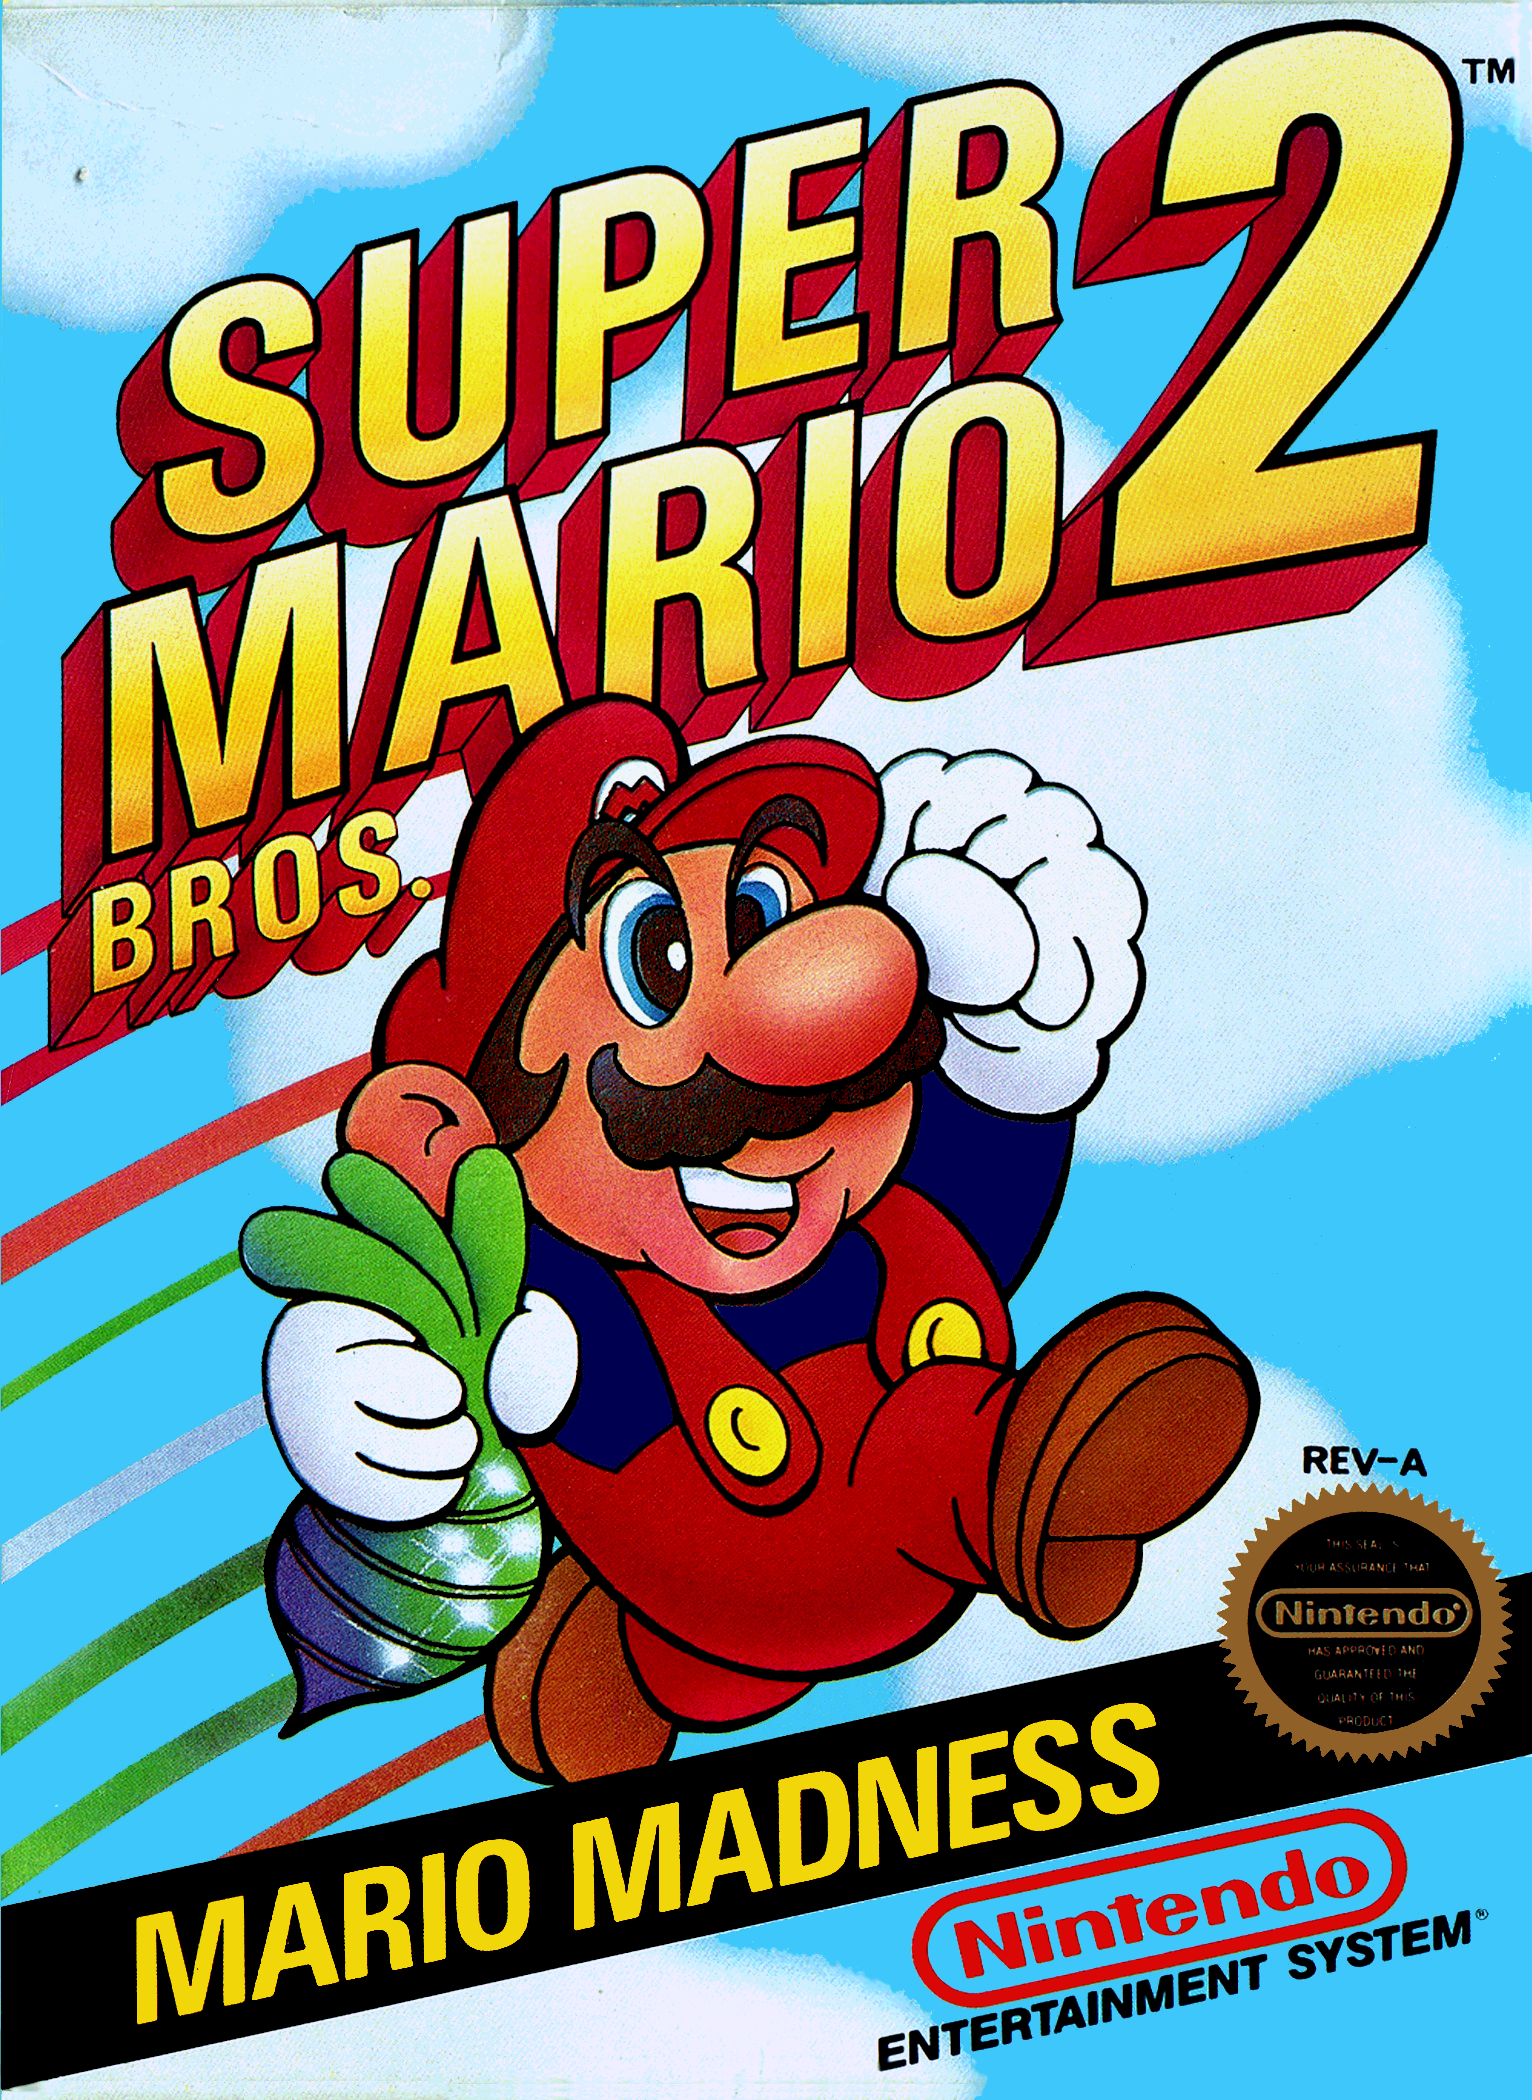 Toad (species) - Super Mario Wiki, the Mario encyclopedia